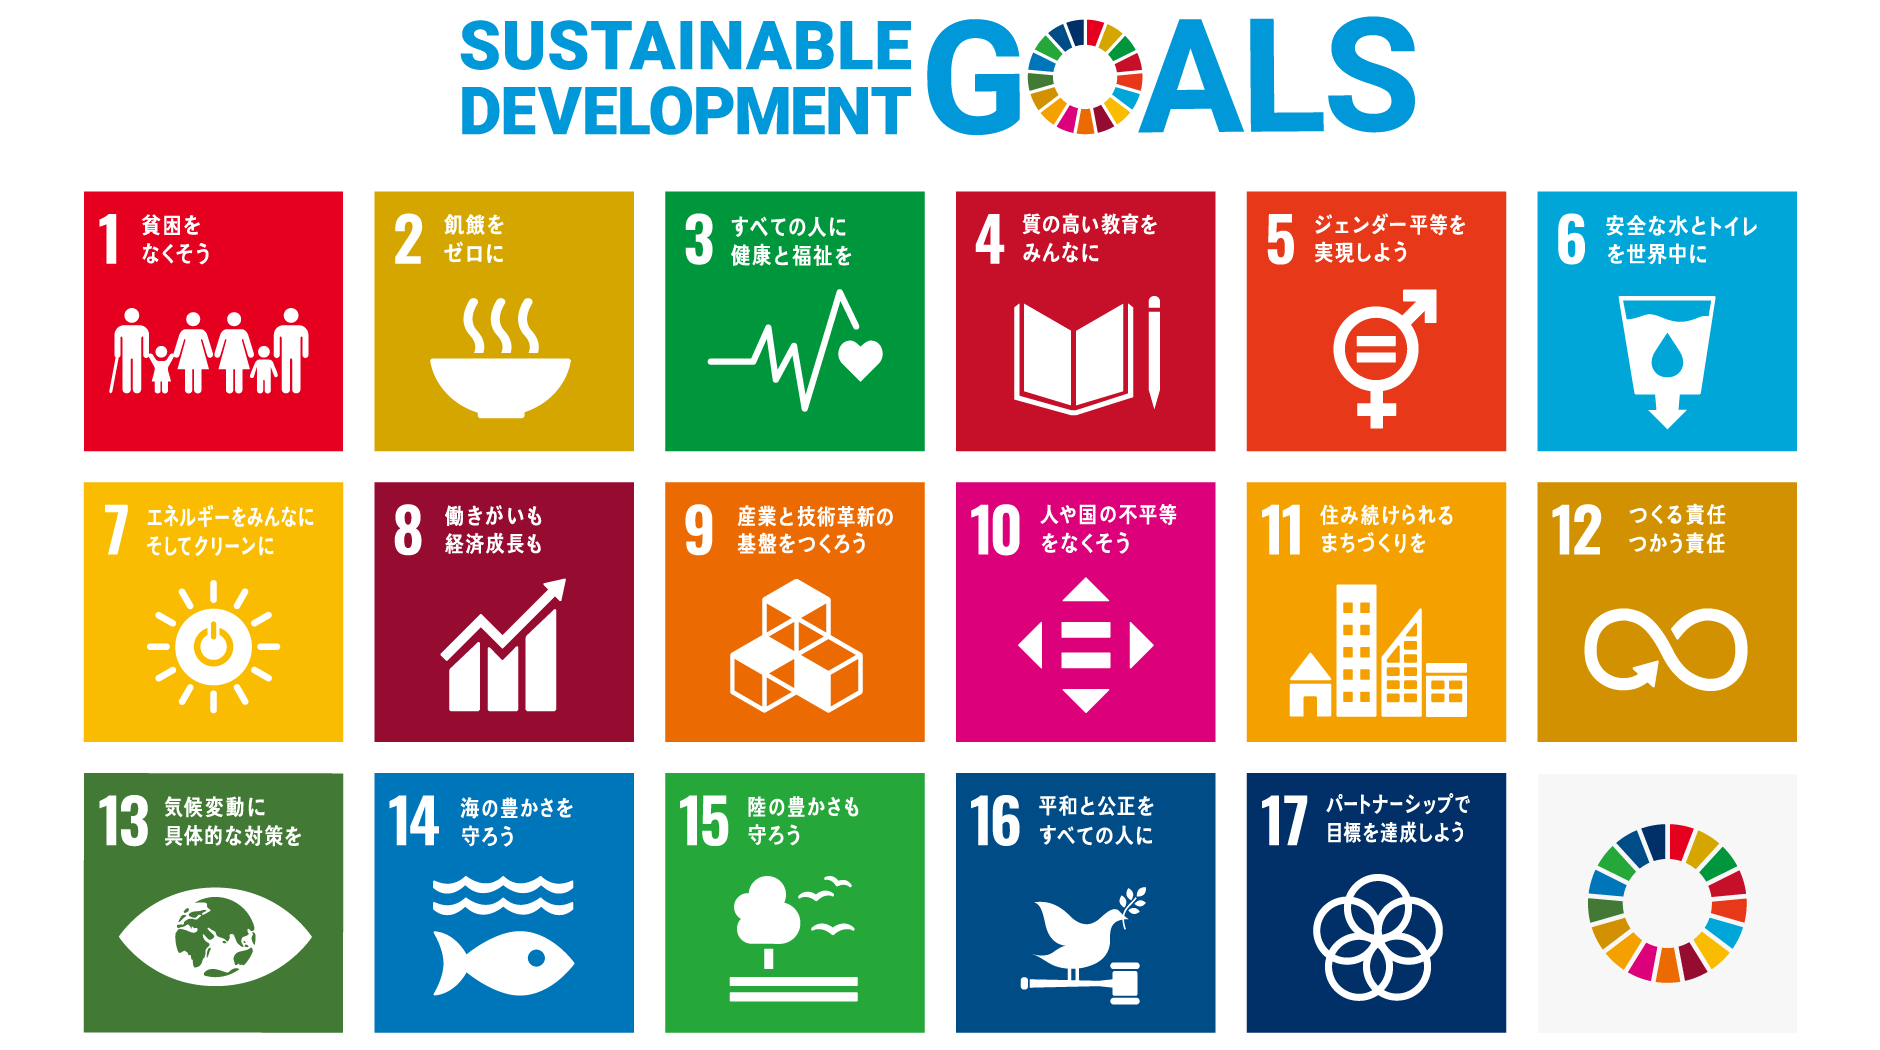 図表1 SDGs 17のゴールを表した画像